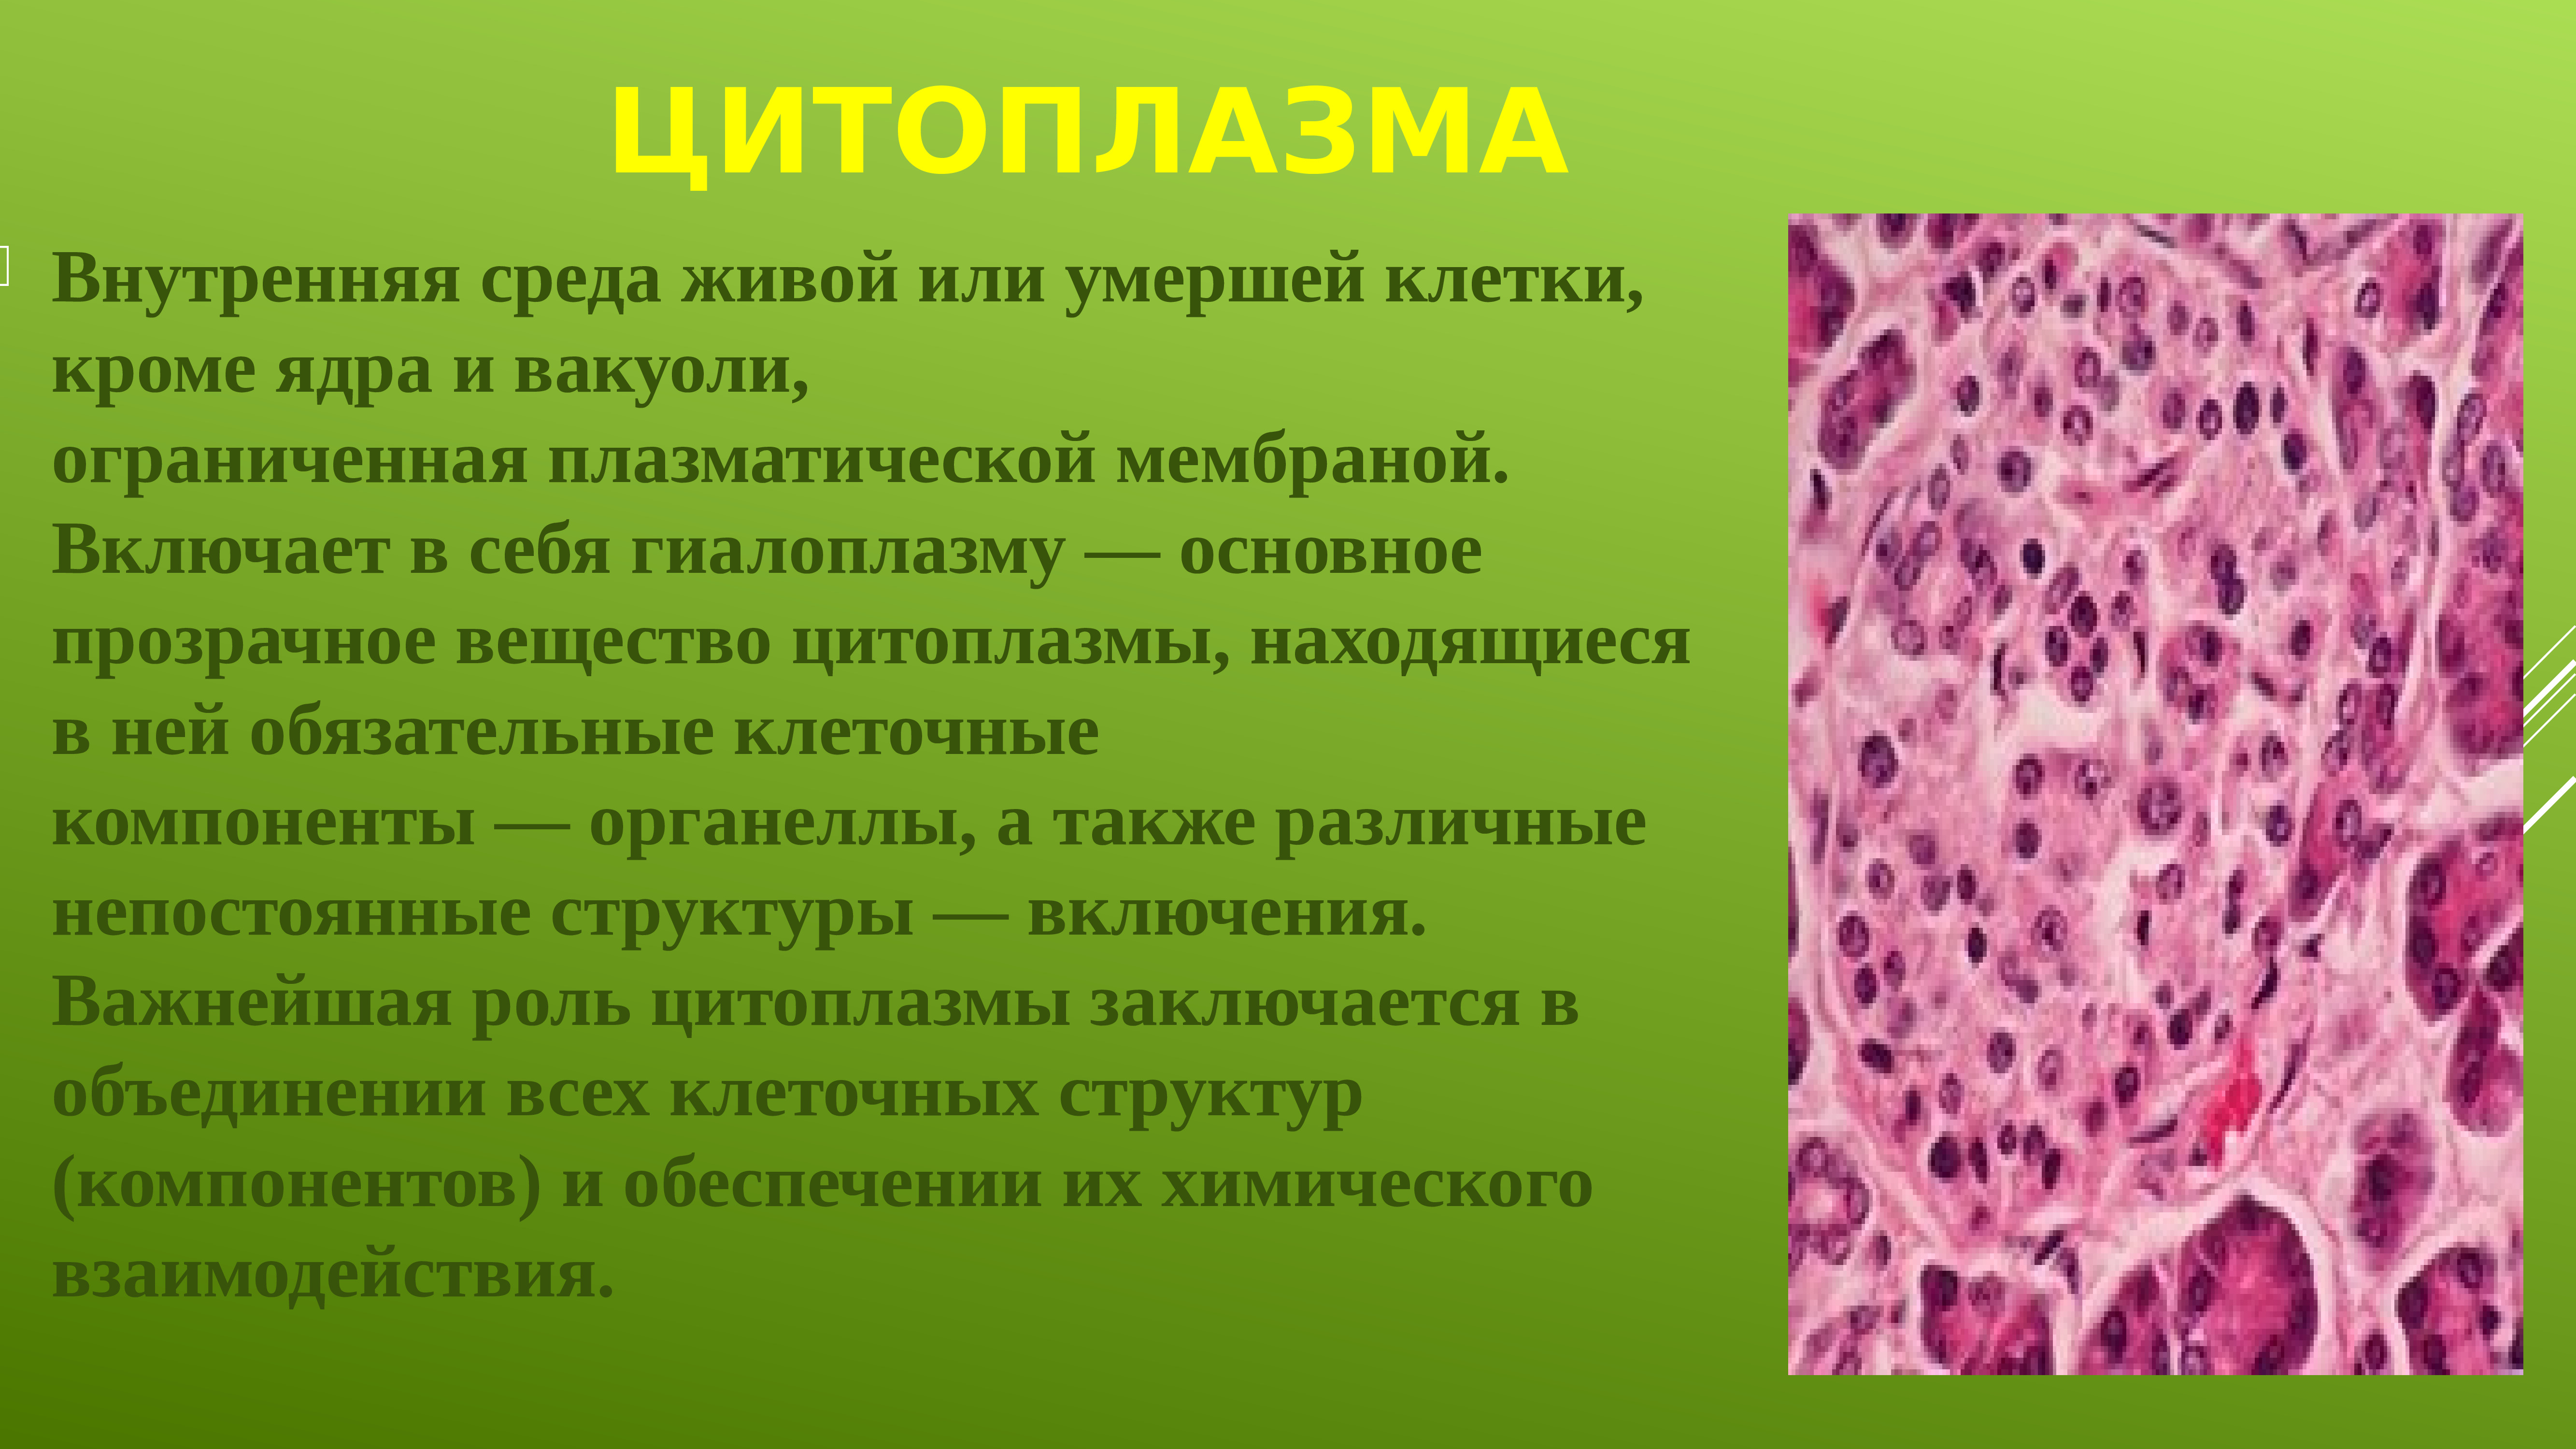 Постоянные структурные компоненты цитоплазмы носят название. Гиалоплазма это гистология. Структура цитоплазмы. Цитоплазма гистология. Строение цитоплазмы.